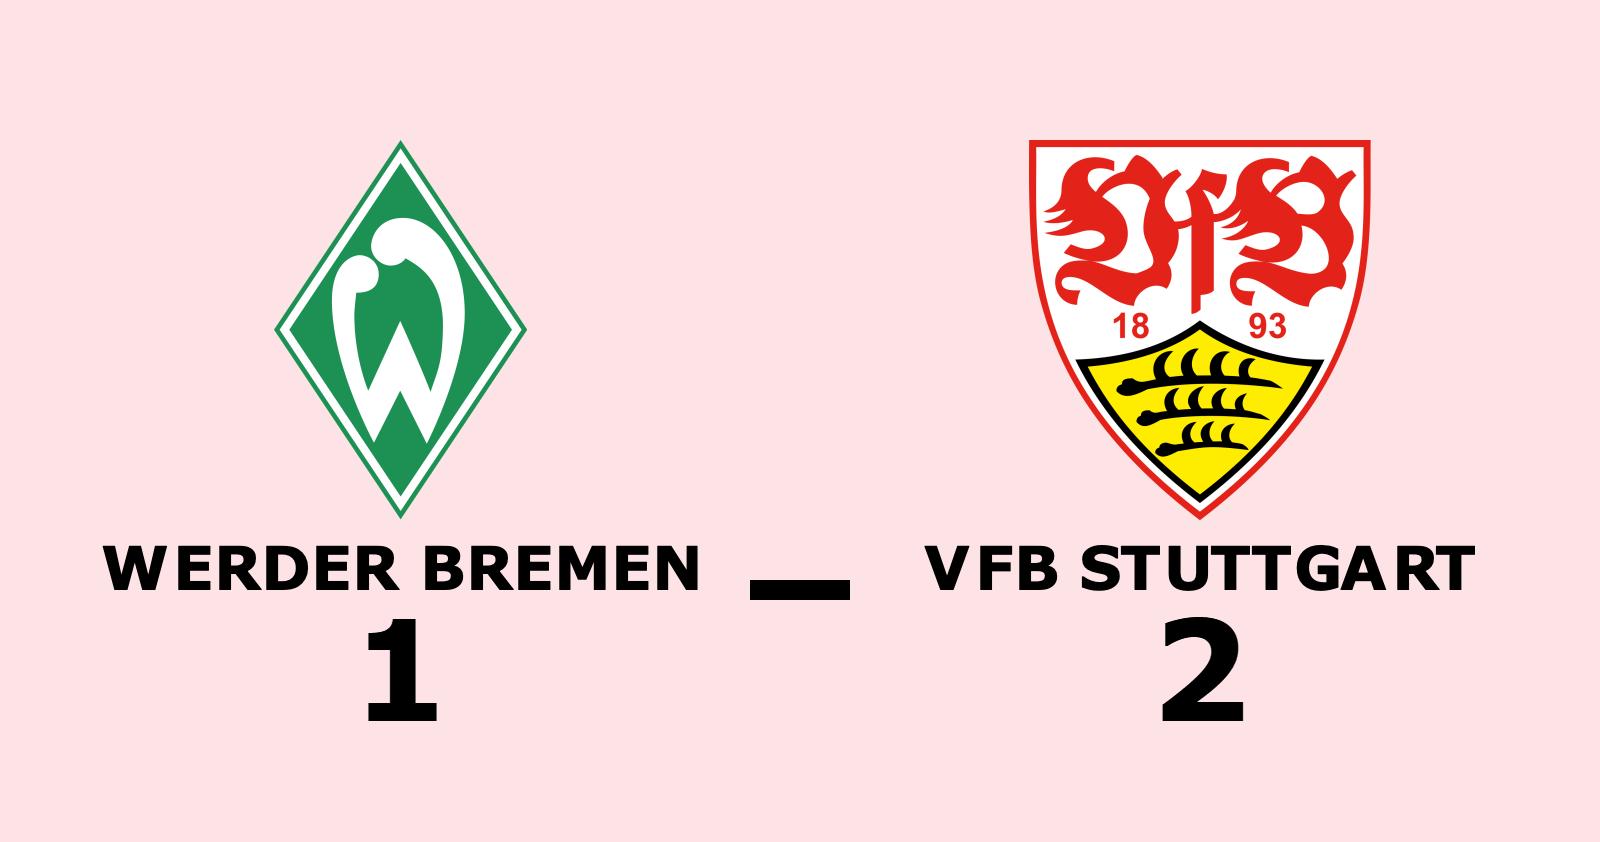 VfB Stuttgart äntligen segrare igen